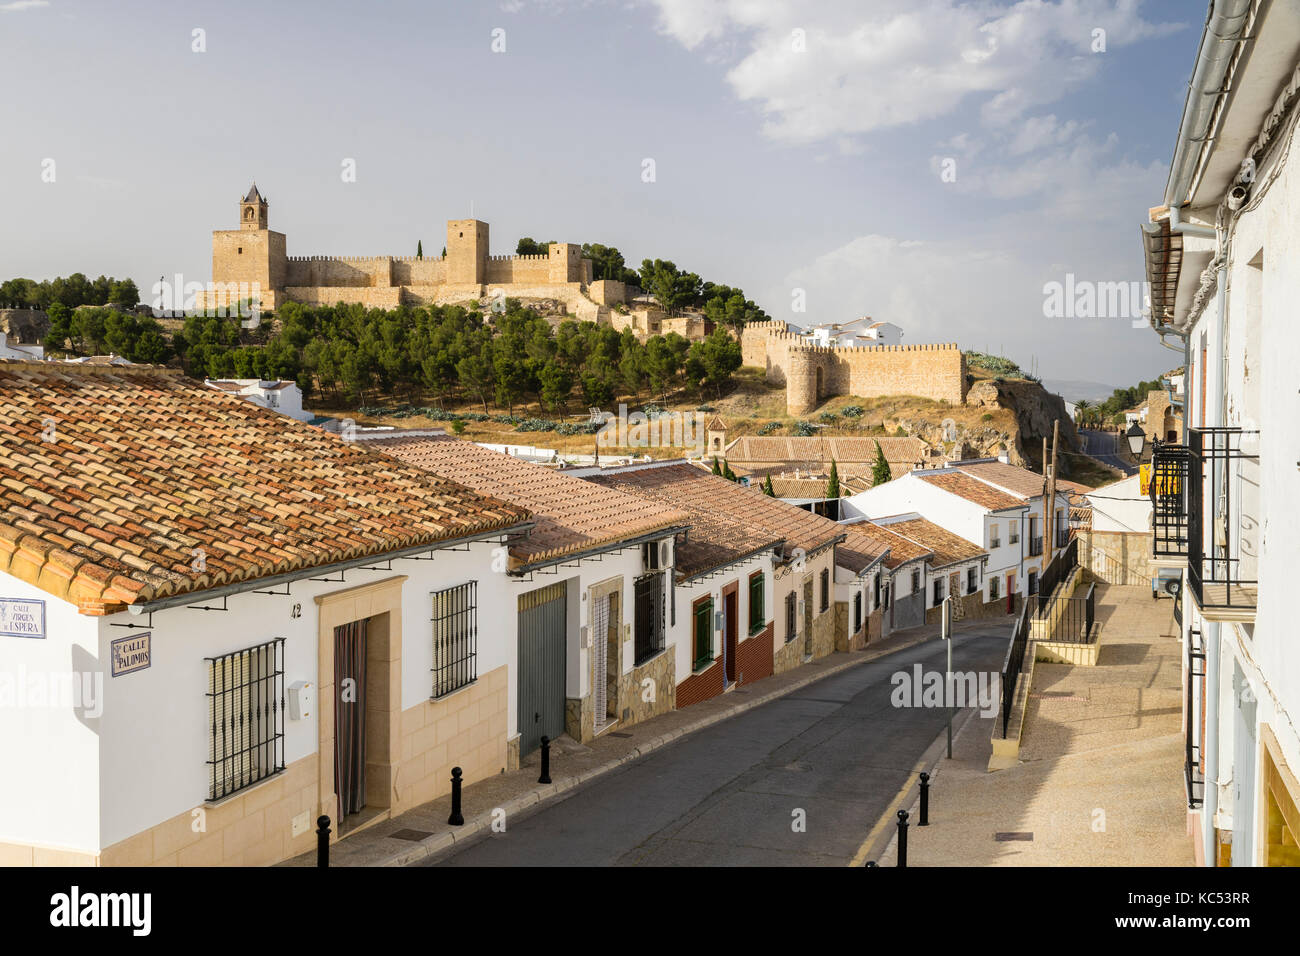 Vieille ville avec forteresse Alcazaba, Antequera, province de Malaga, Andalousie, Espagne Banque D'Images